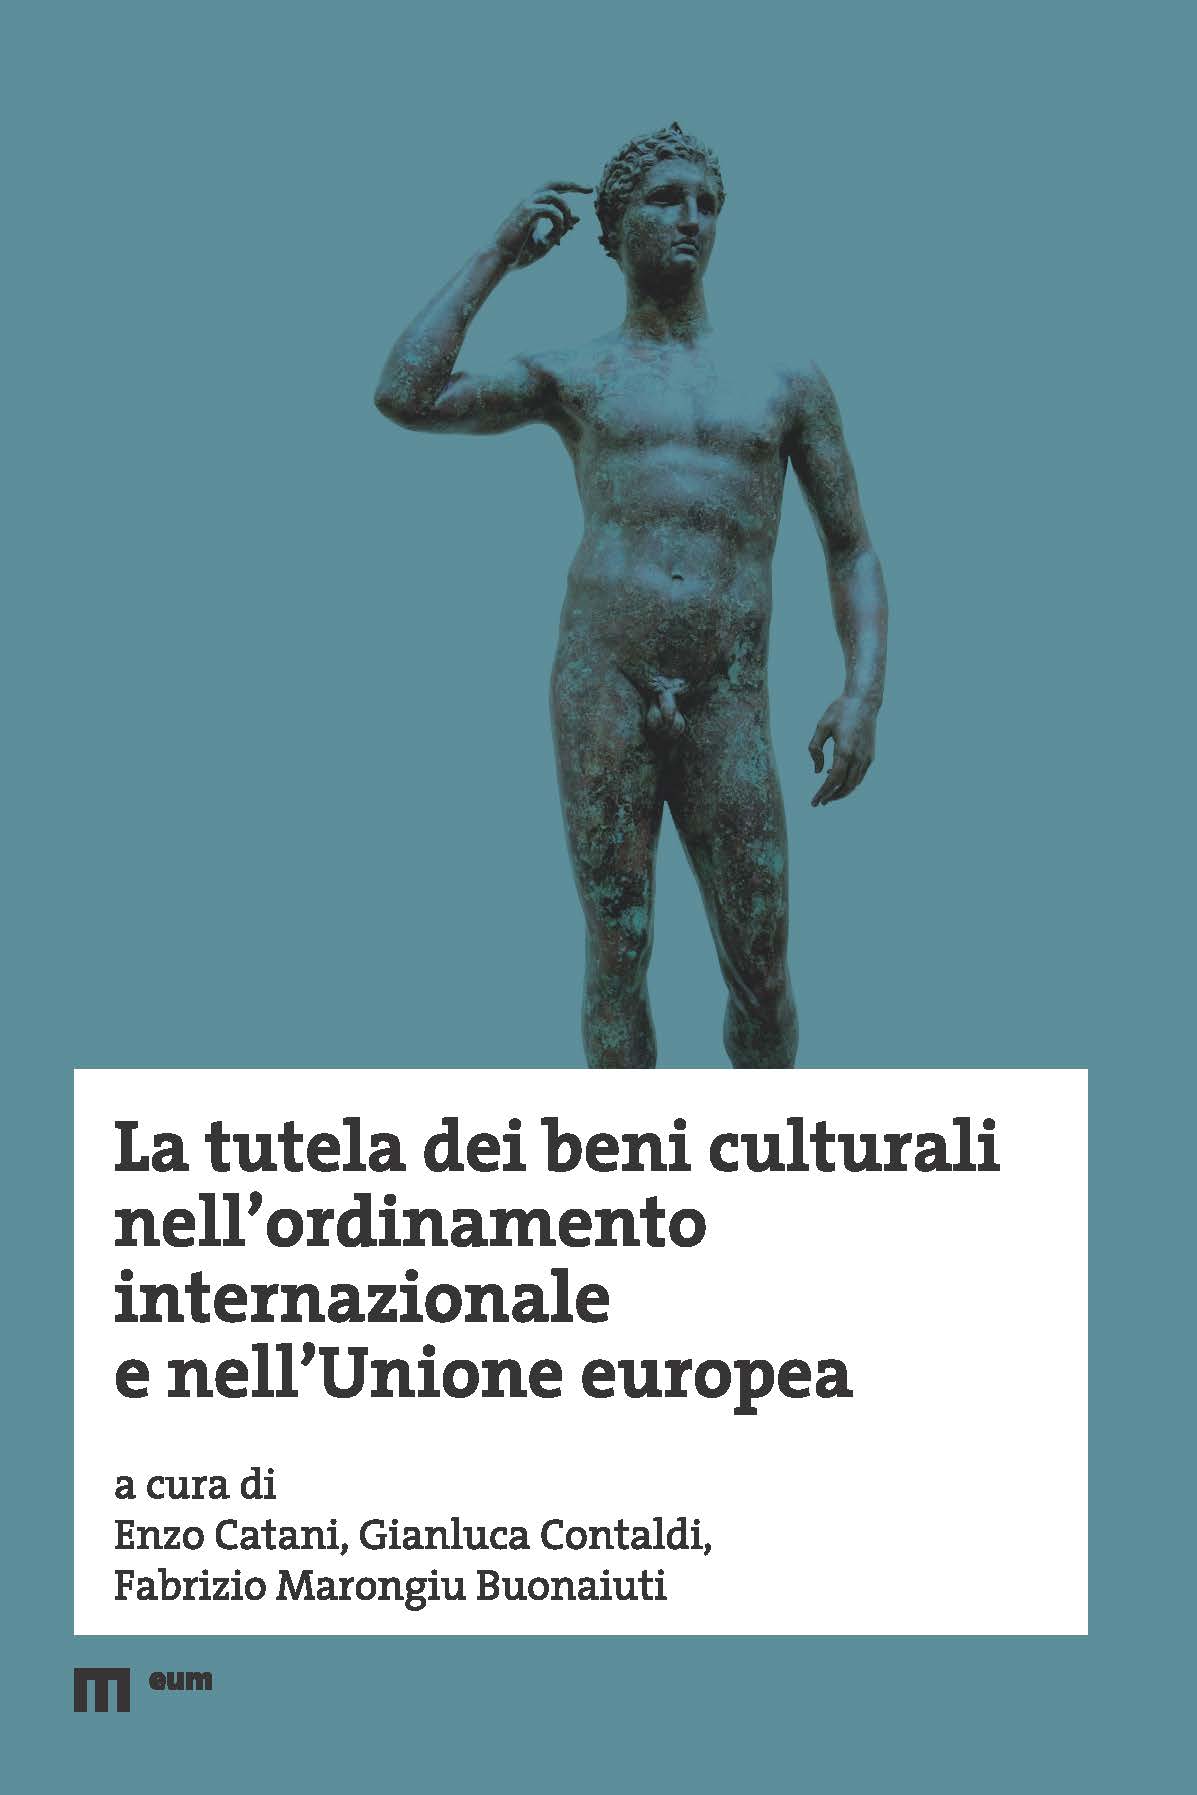 La tutela dei beni culturali nell’ordinamento internazionale e nell’Unione europea